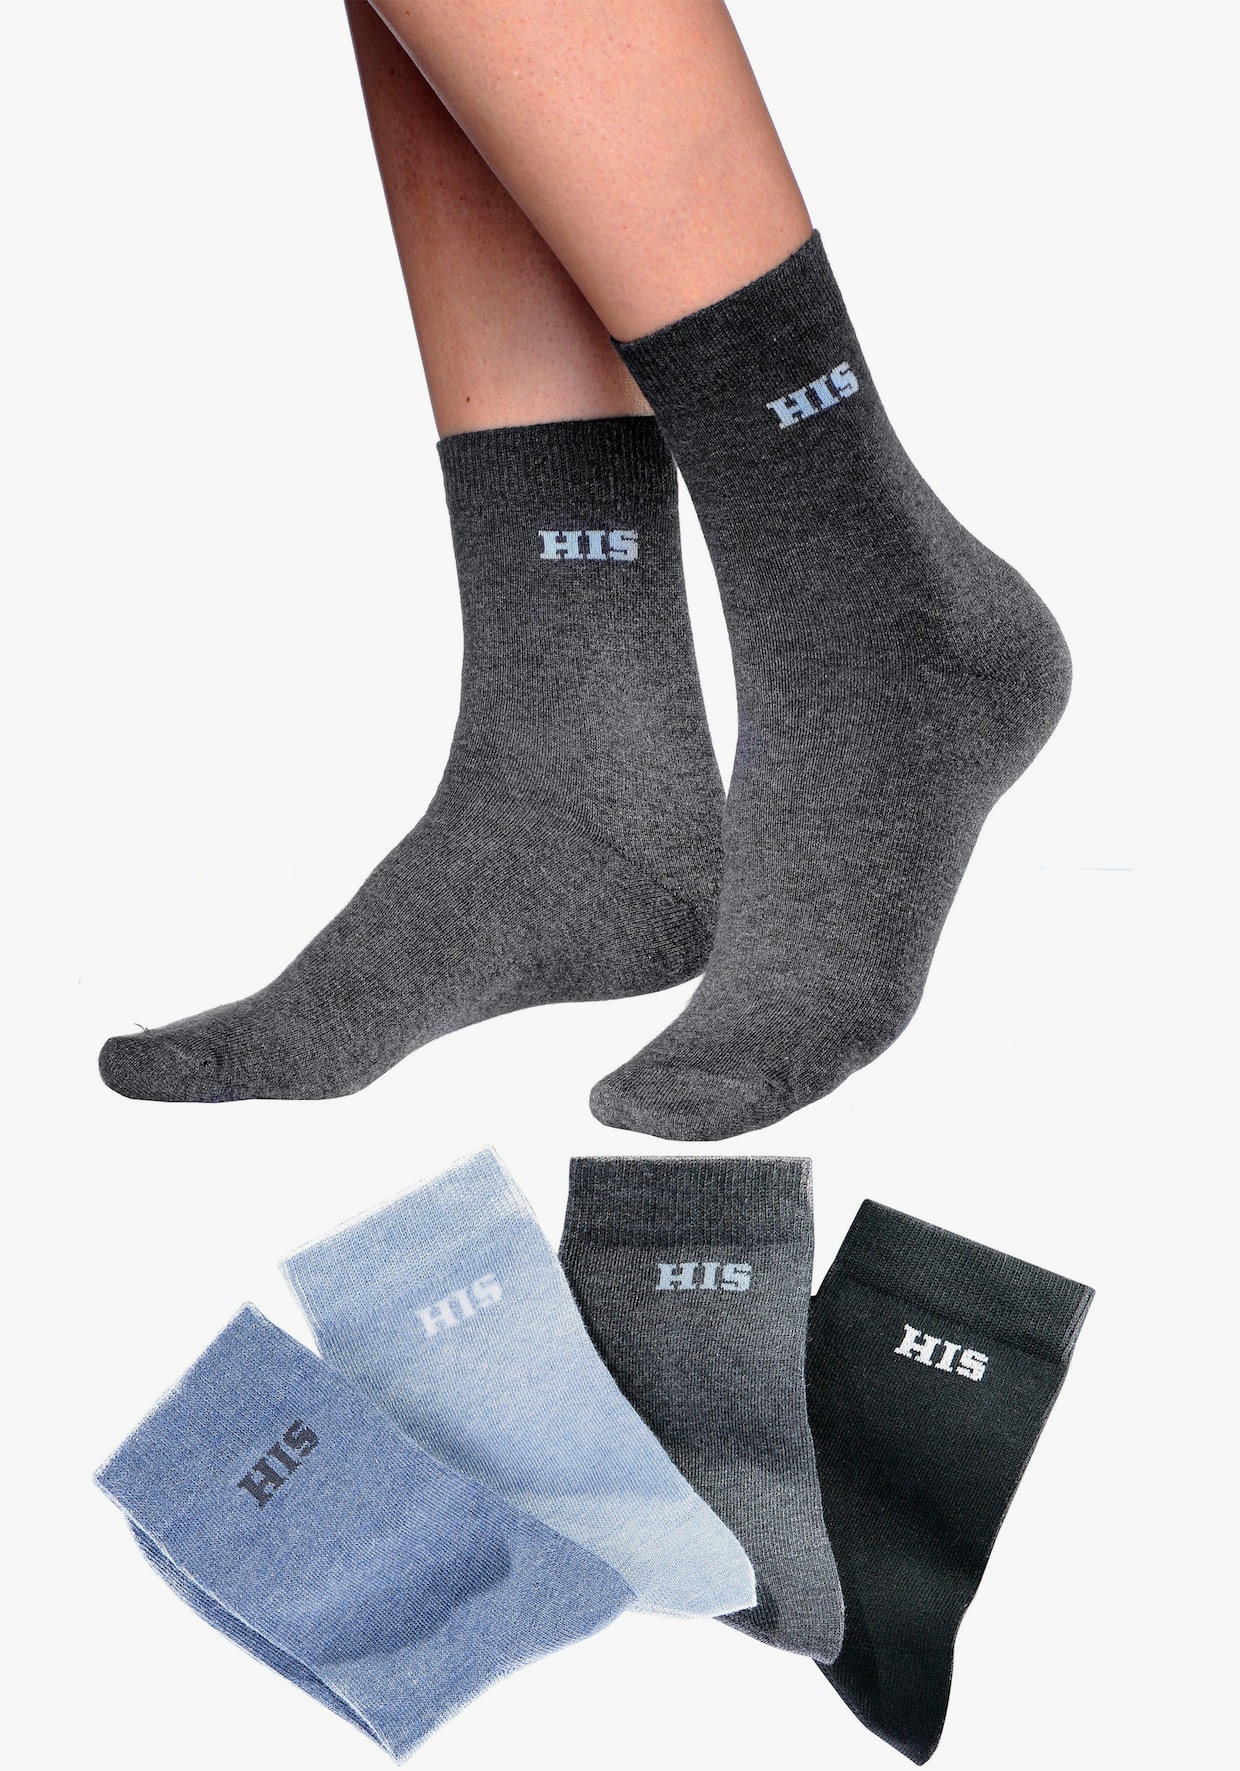 H.I.S chaussettes basiques - bleu clair, bleu, gris, noir